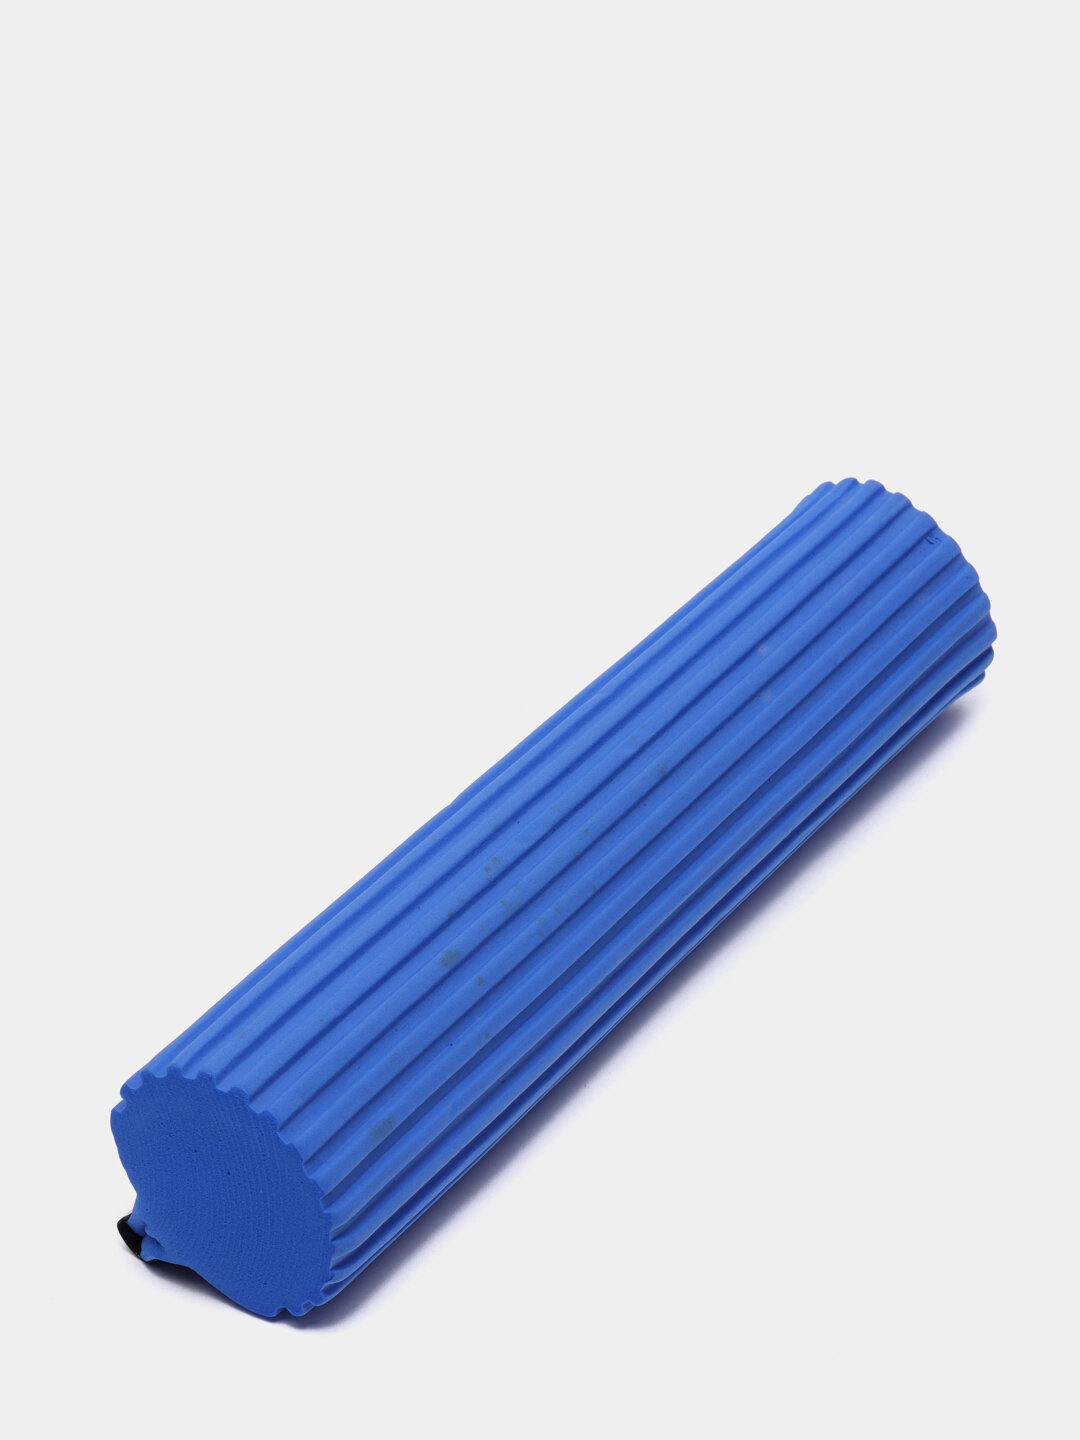 Насадка для швабры самоотжимной роликовой, 26 см, синяя, лайма